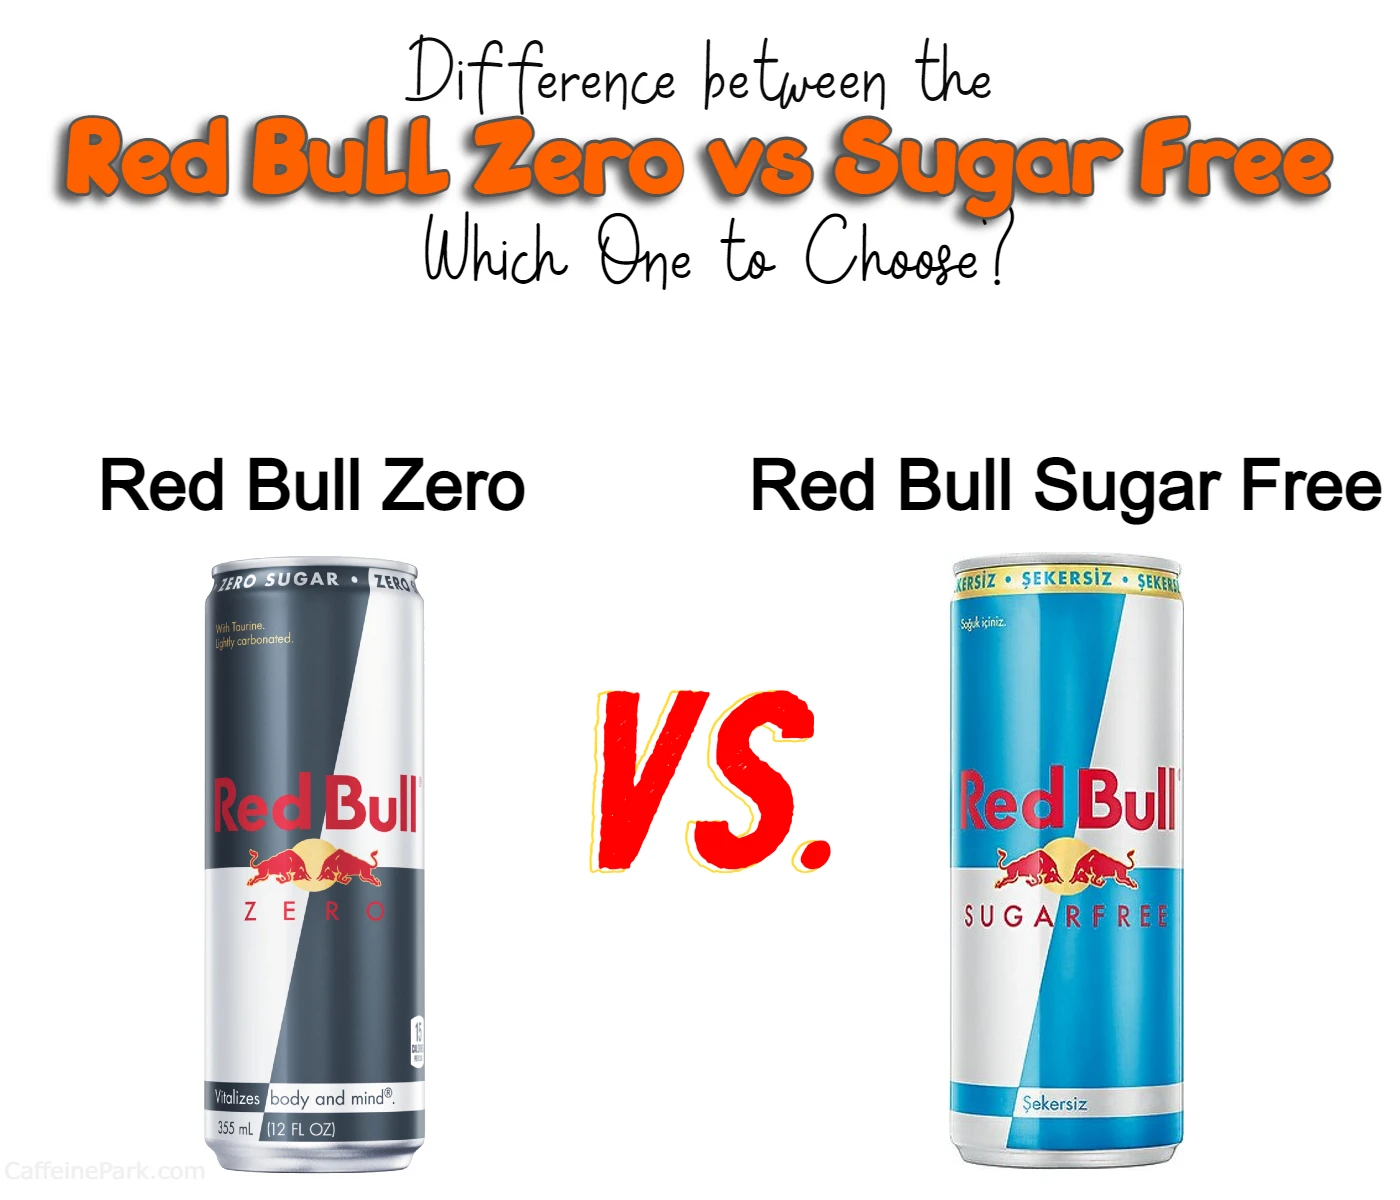 Bull Zero vs Red Bull Sugar Free: One